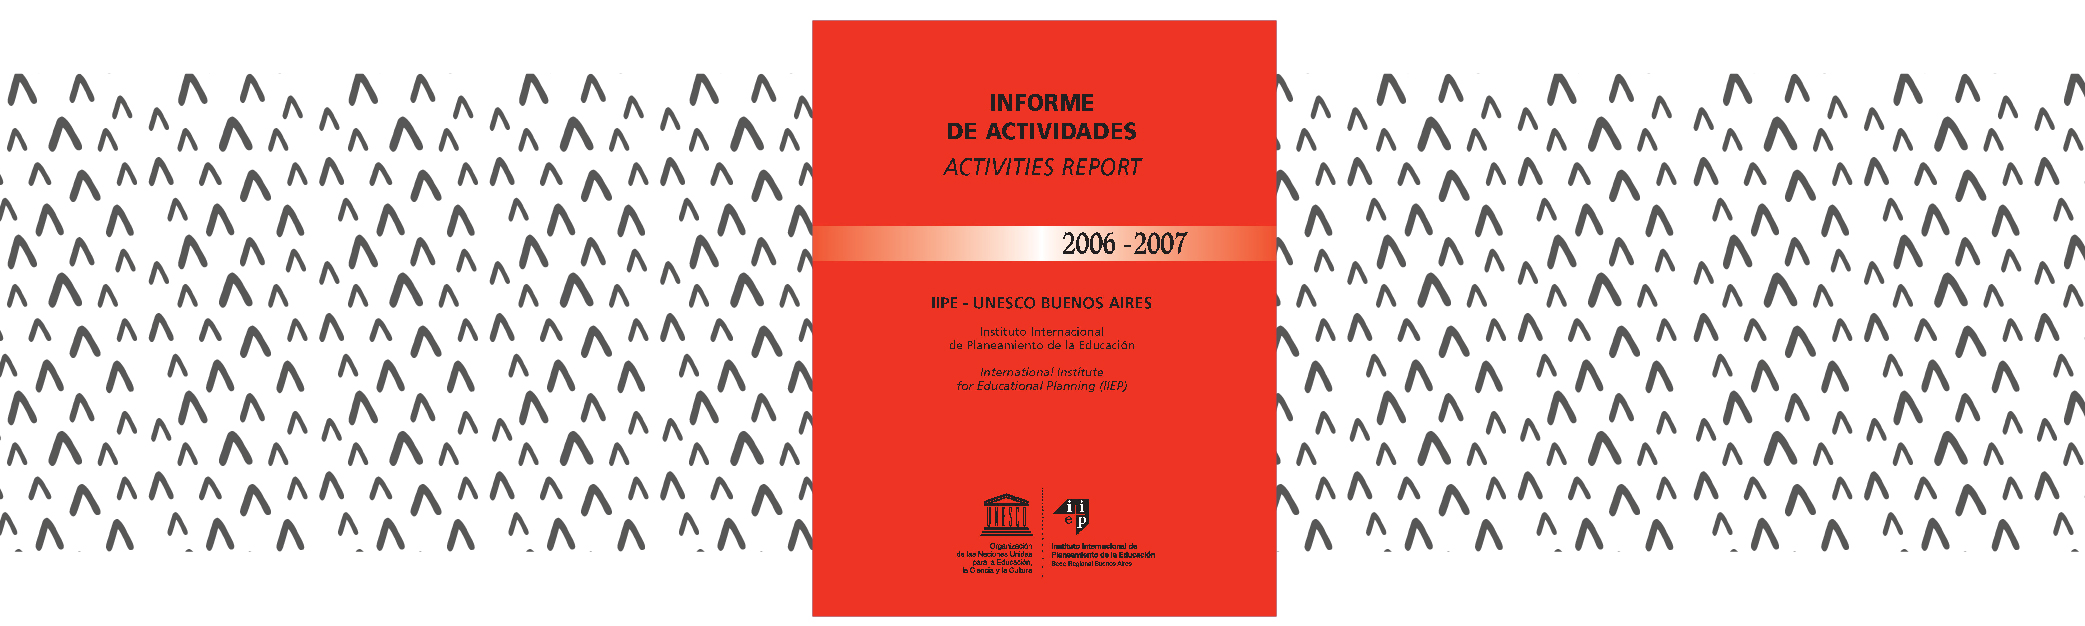 Informe de actividades 2006